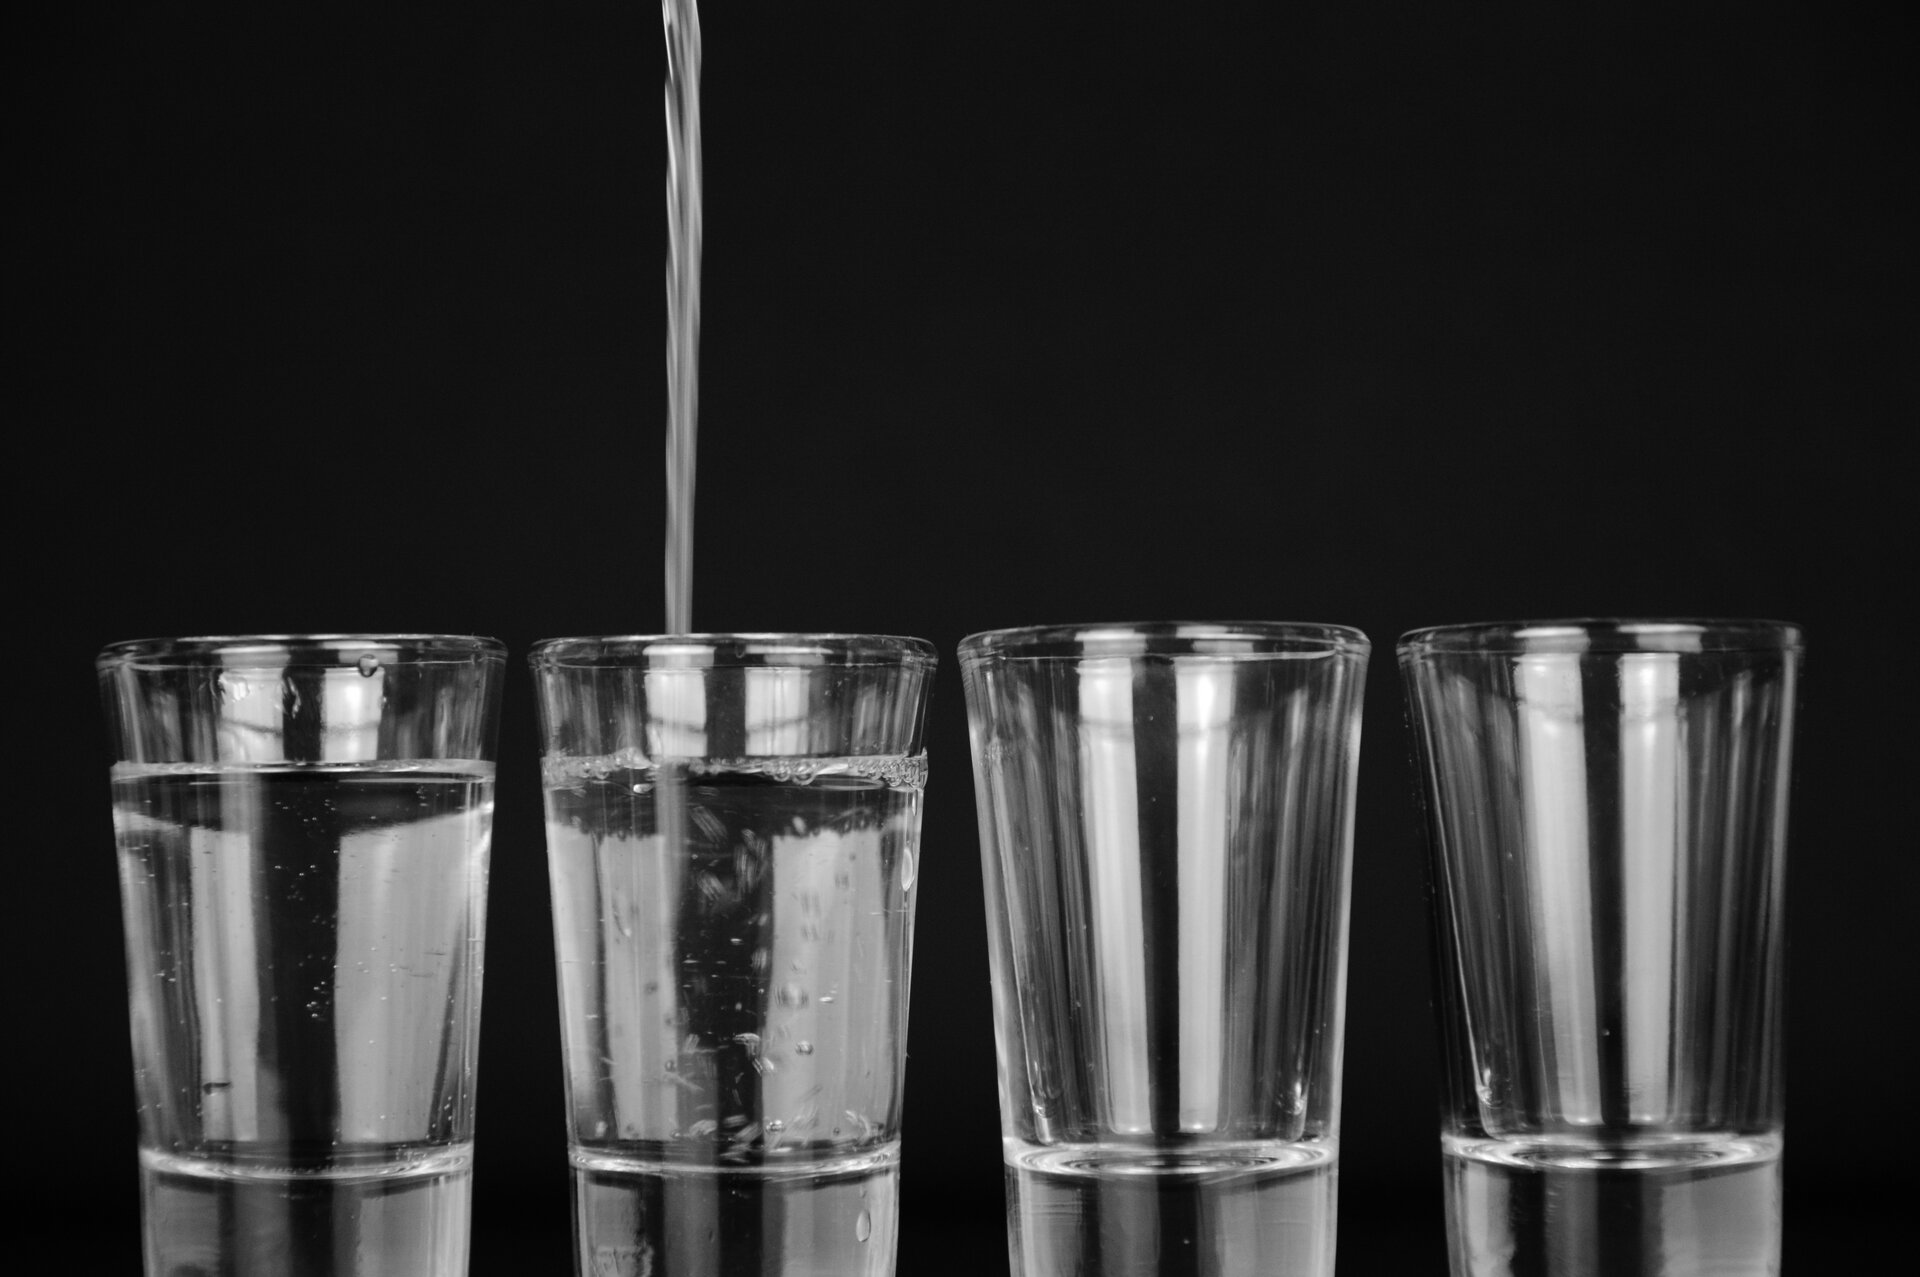 Zdjęcie przedstawia cztery szklanki stojące w jednym rzędzie. Do pierwszej szklanki nalano wodę do trzech czwartych wysokości szklanki. Do drugiej szklanki jest właśnie nalewana woda do trzech czwartych wysokości szklanki. Pozostałe dwie szklanki są puste.